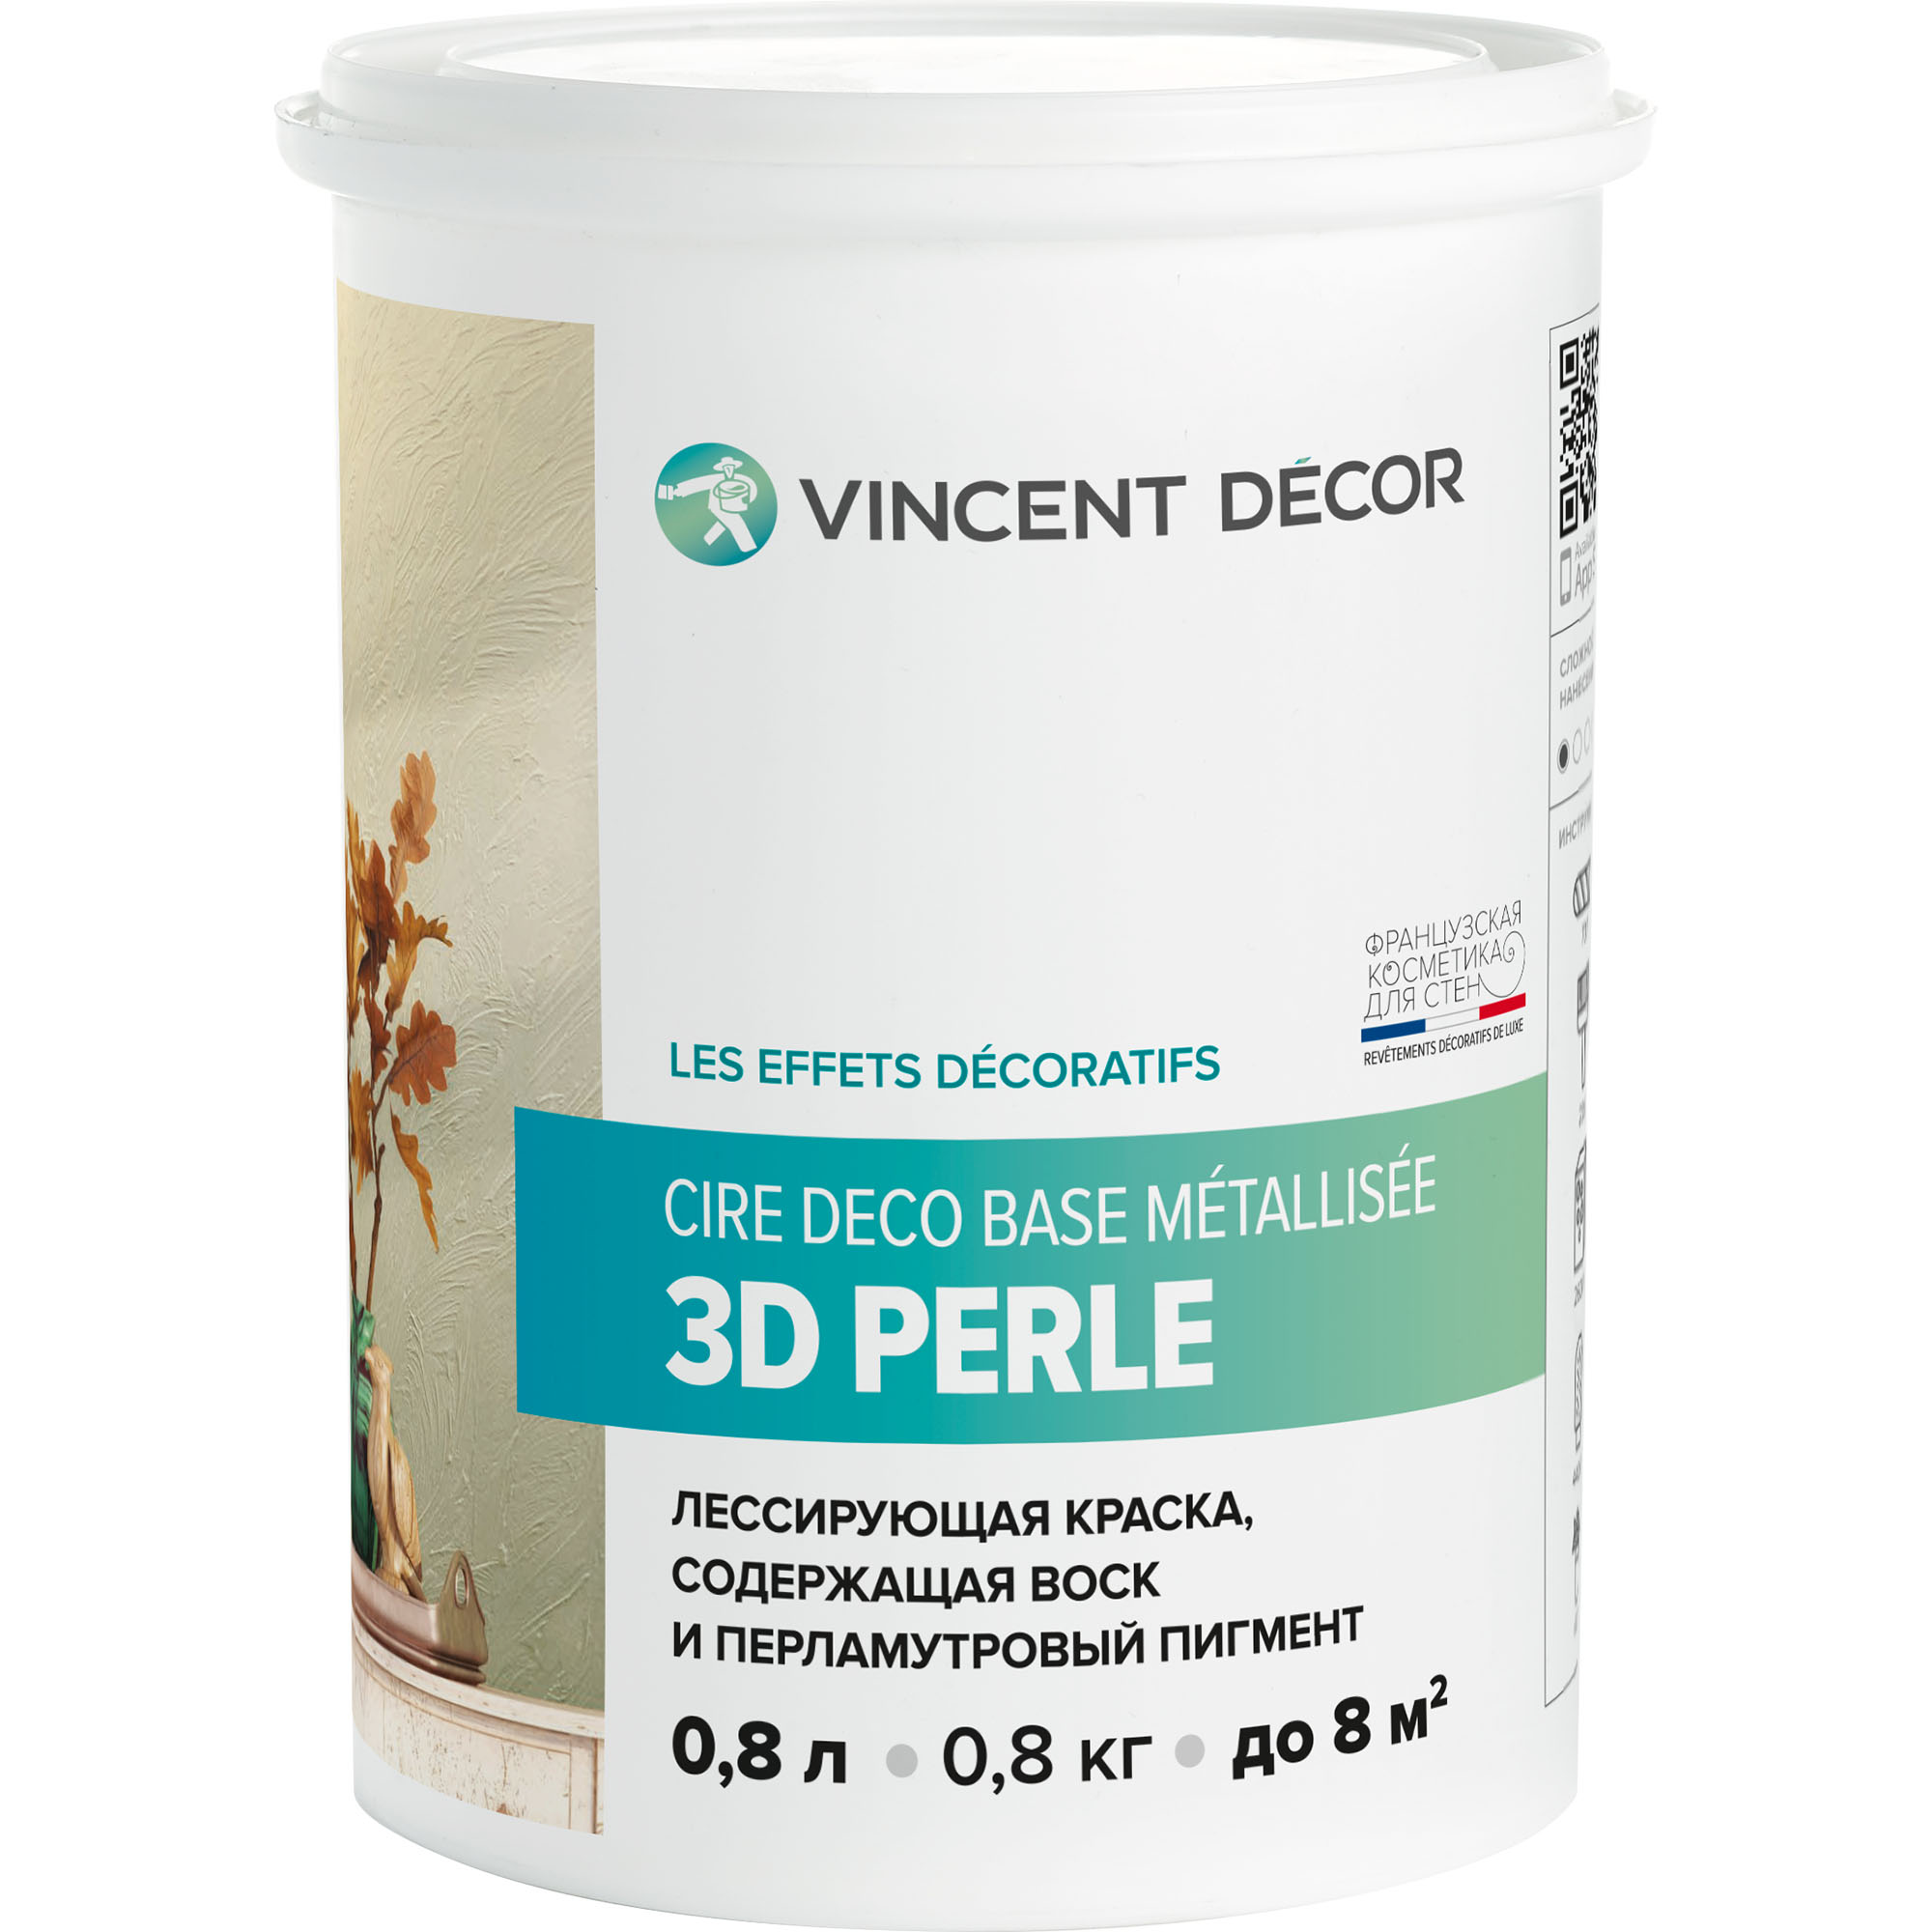 Краска лессирующая для декоративных покрытий Vincent Decor Cire deco base Metallisee 3D Perle золотистый перламутр 0,8 л краска лессирующая vincent decor cire deco с воском для декоративных покрытий 1 л